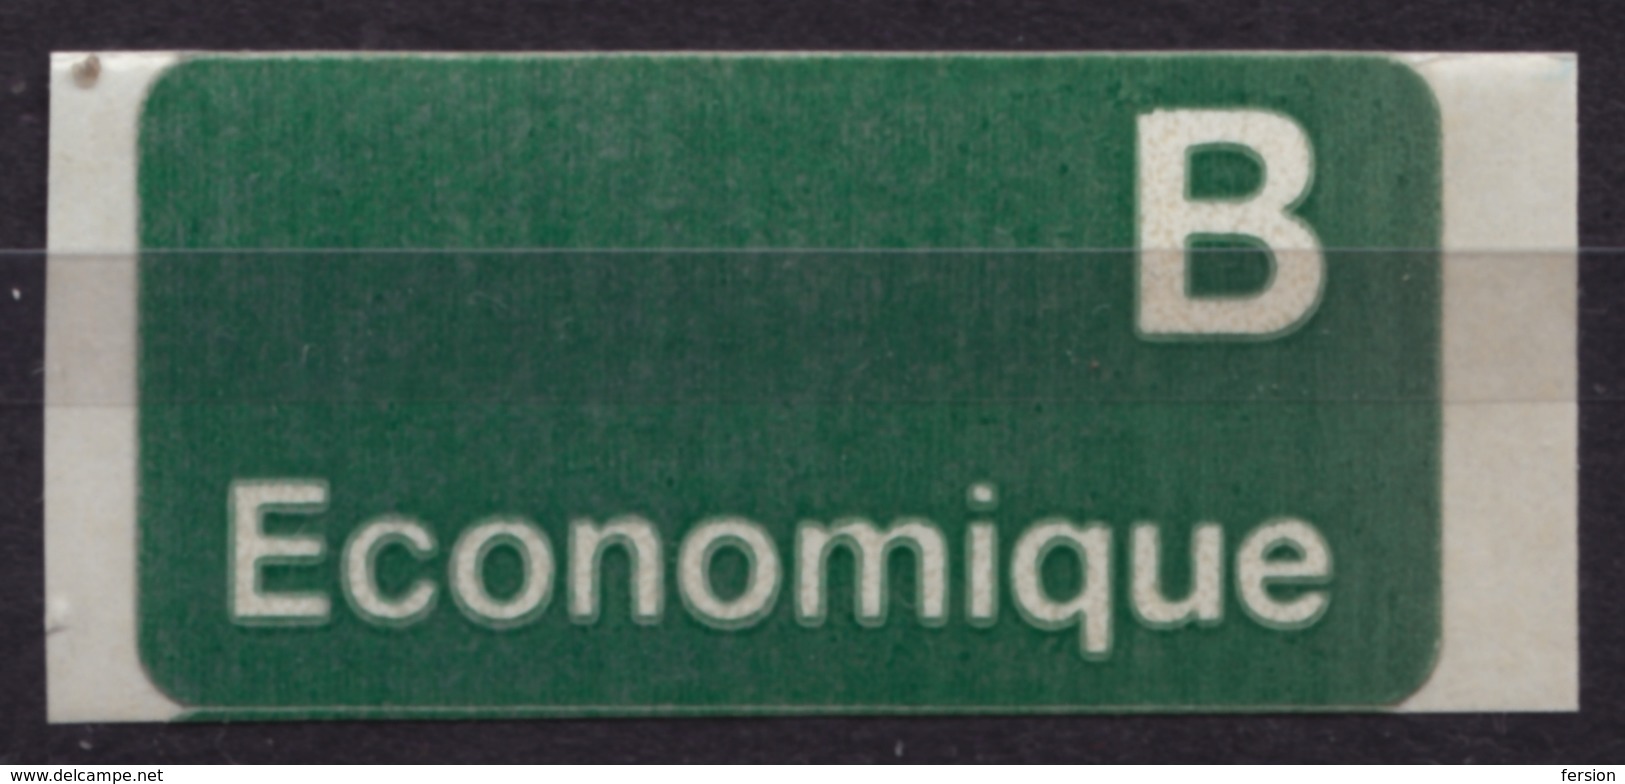 B Economique Vignette Label SEWDEN SVERIGE Self Adhesive Not Used - Viñetas De Franqueo [ATM]